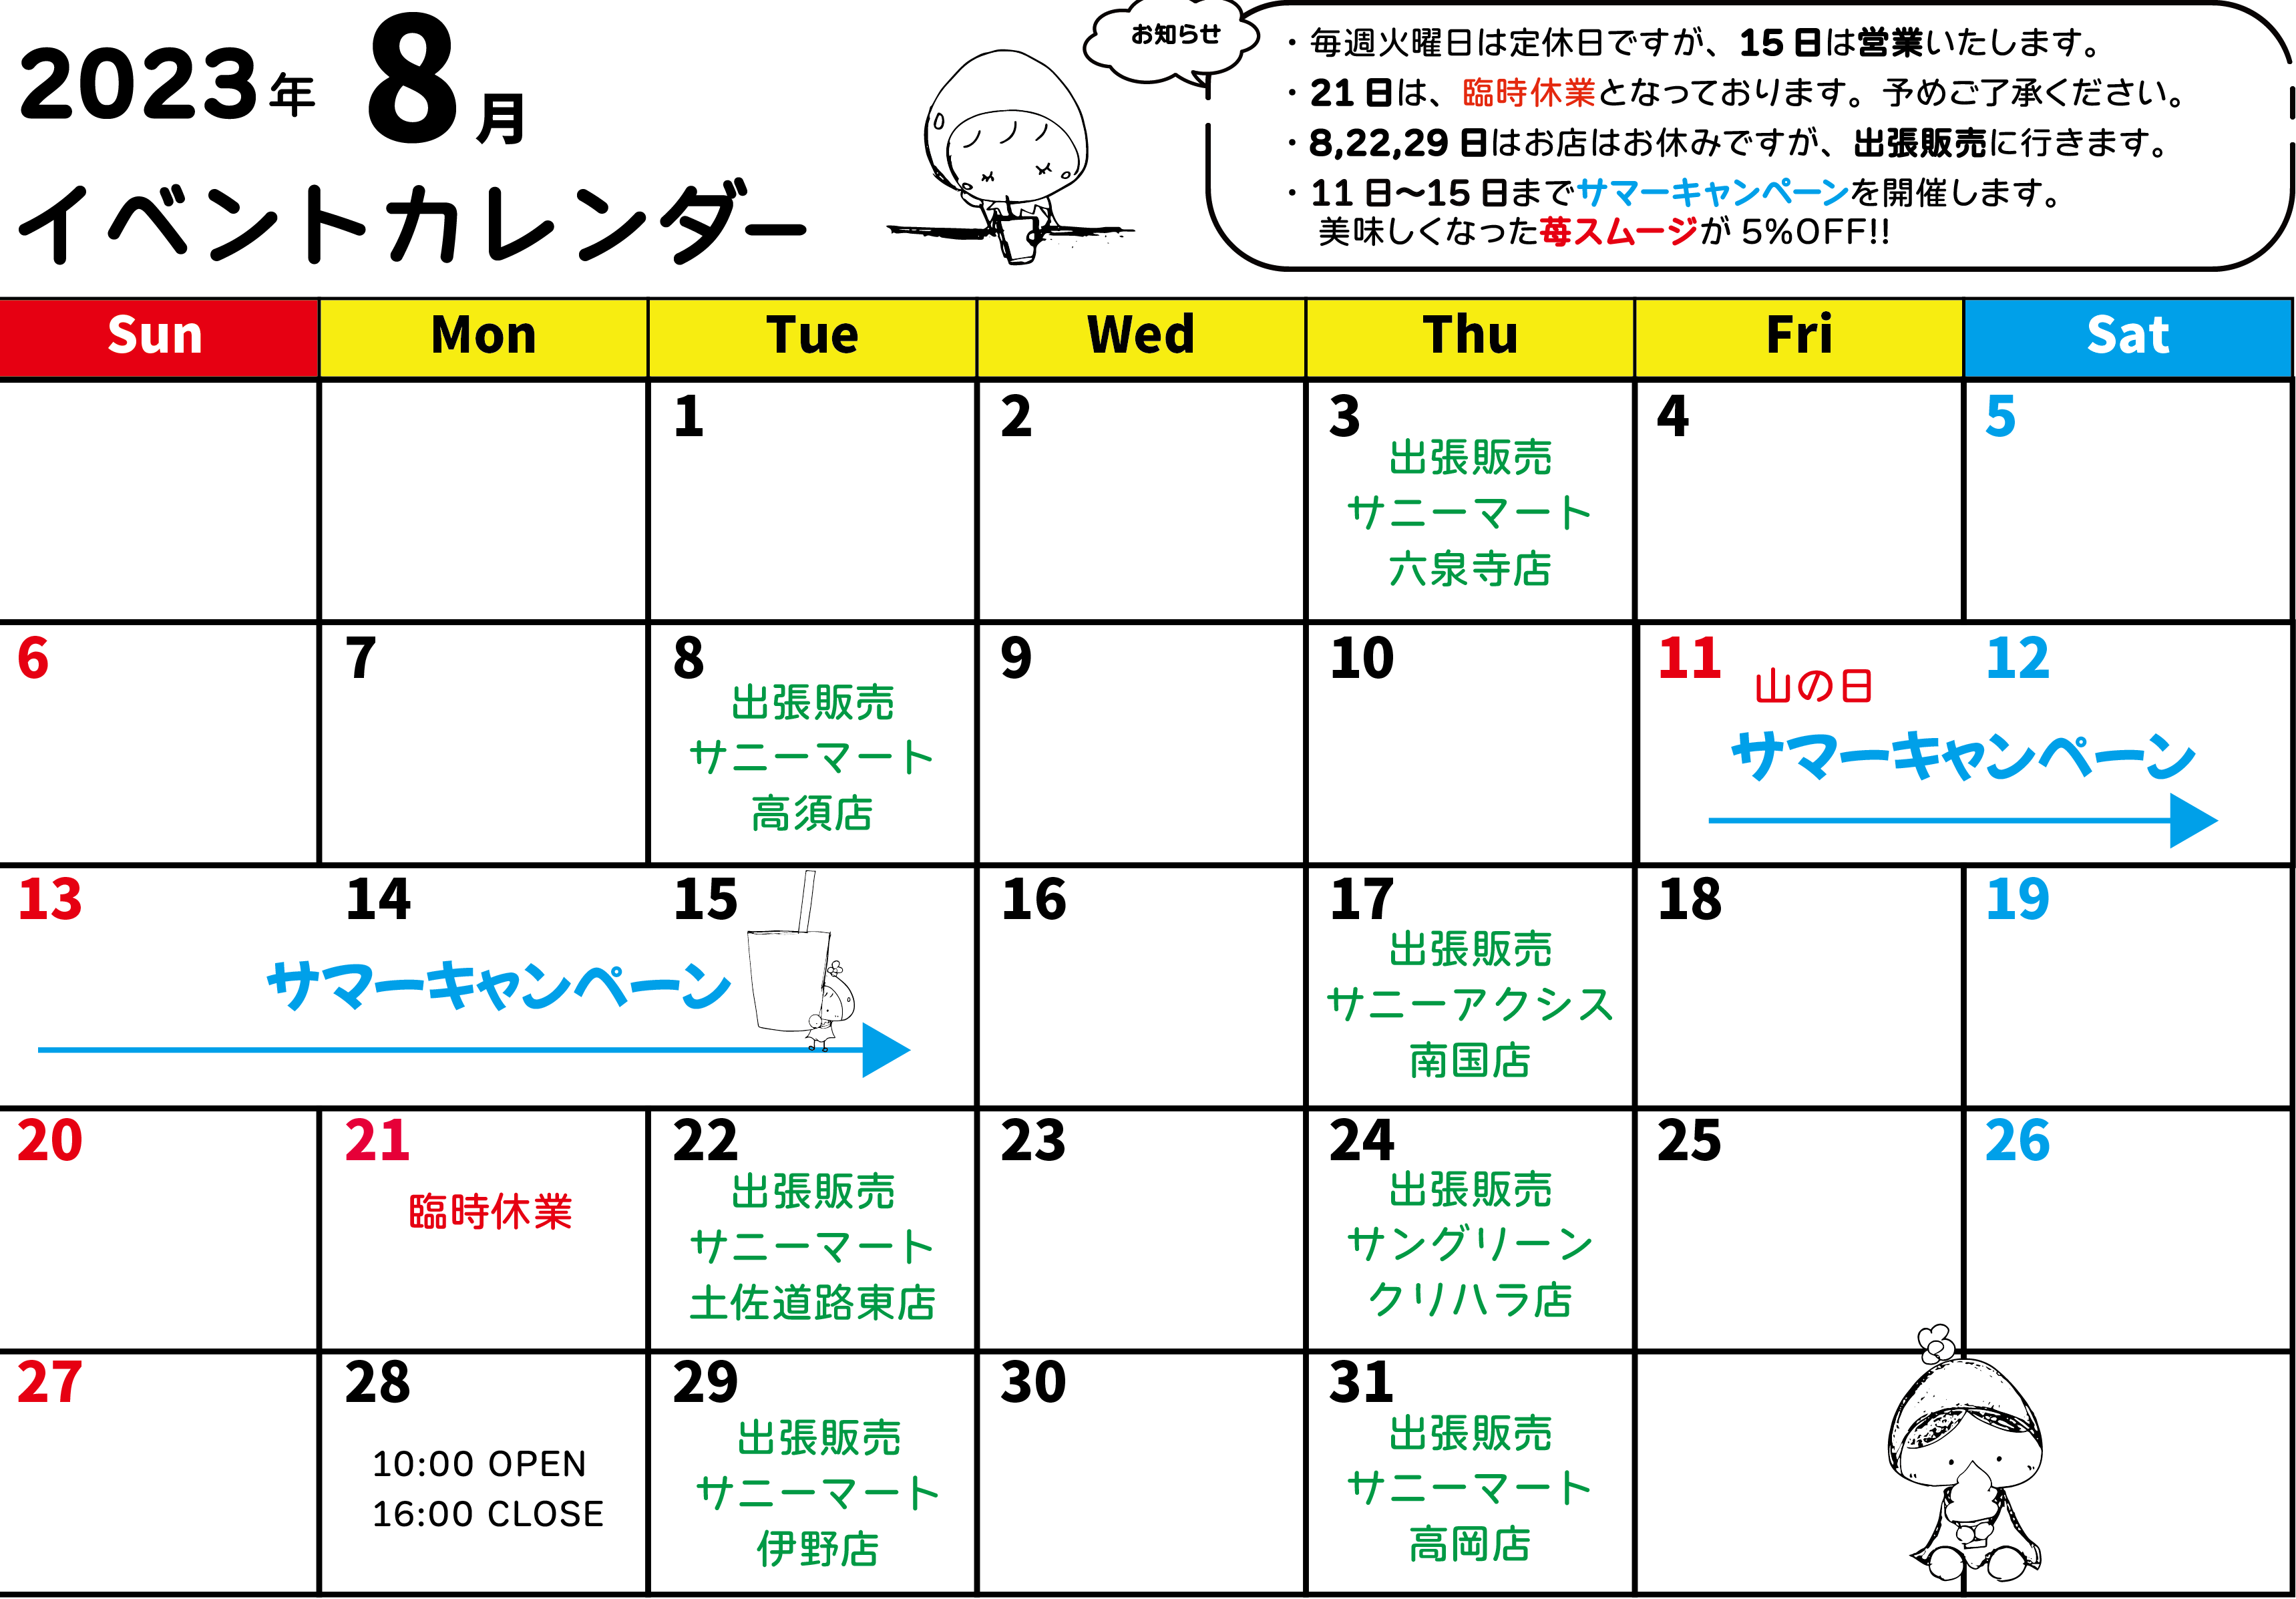 8月イベントカレンダー♪ 